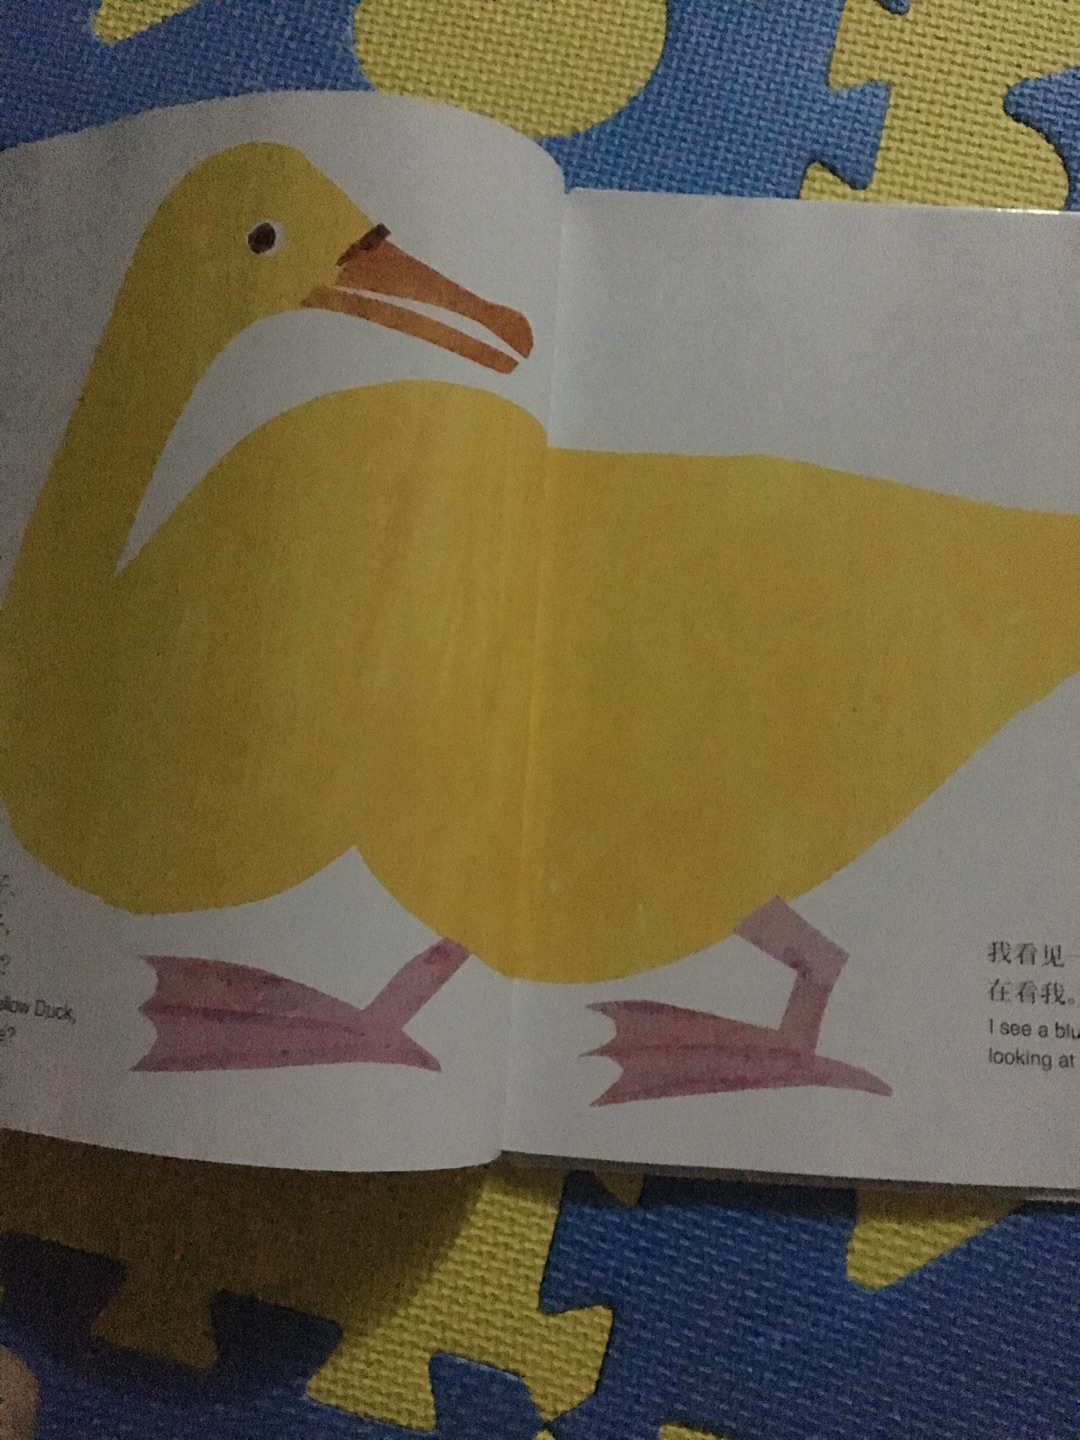 中英文的，最近宝宝会拿英文绘本看，先给读中文在读英文